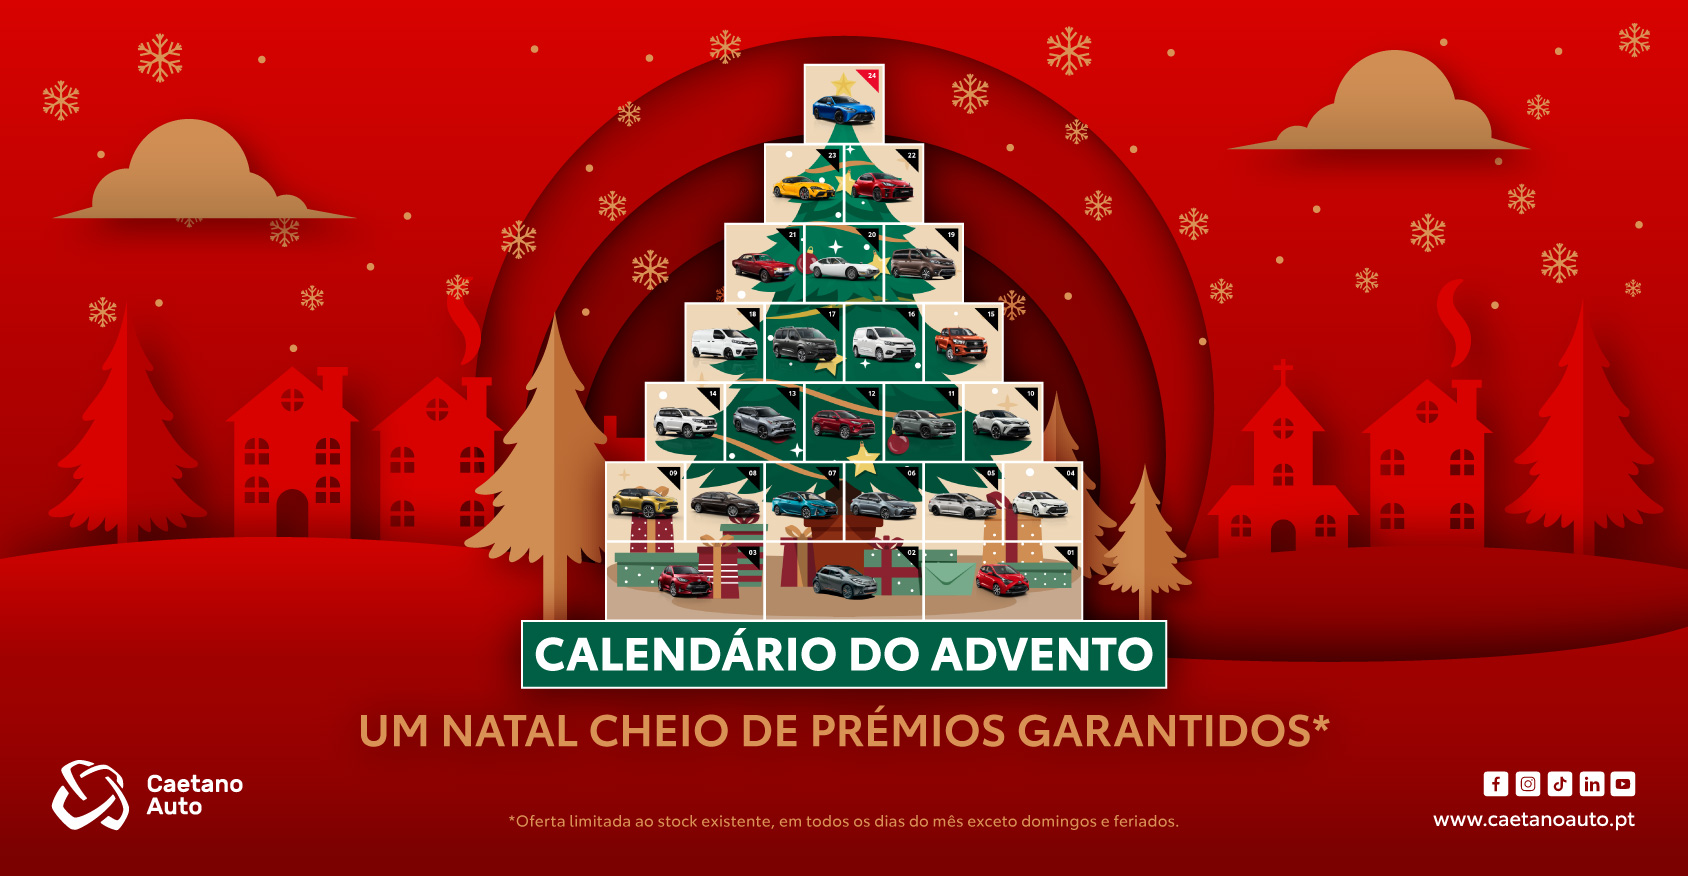 Calendário do Advento Caetano Auto: um natal cheio de prémios garantidos